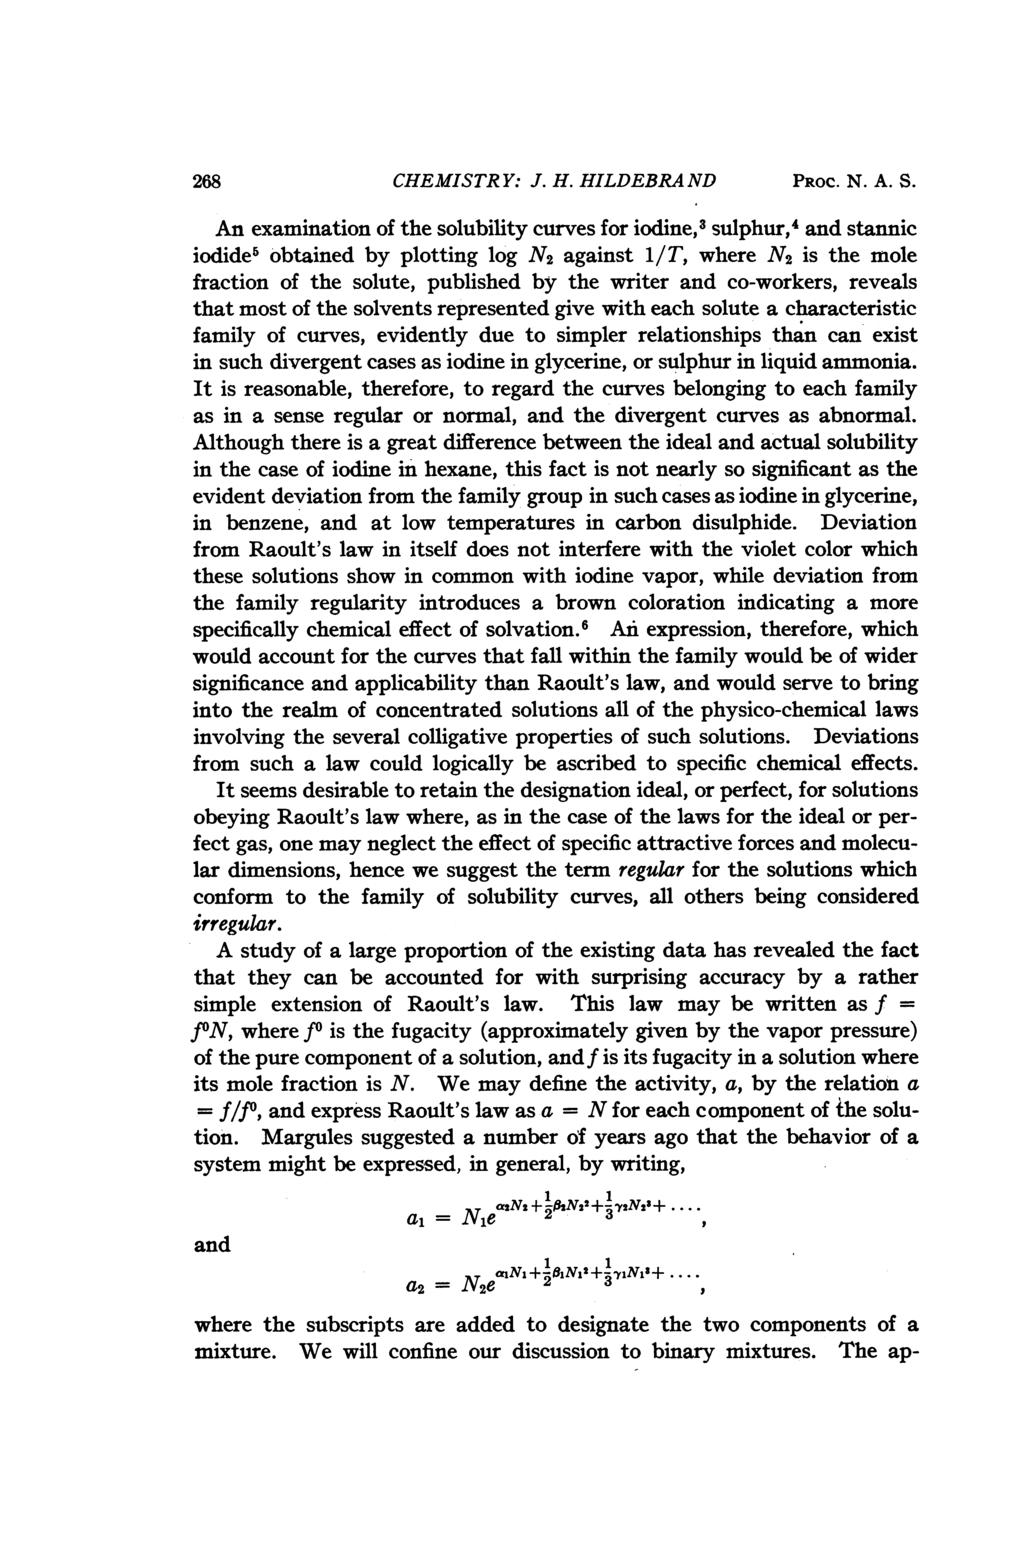 268 CHEMISTR Y: J. H. HILDEBRA ND PROC. N. A. S.